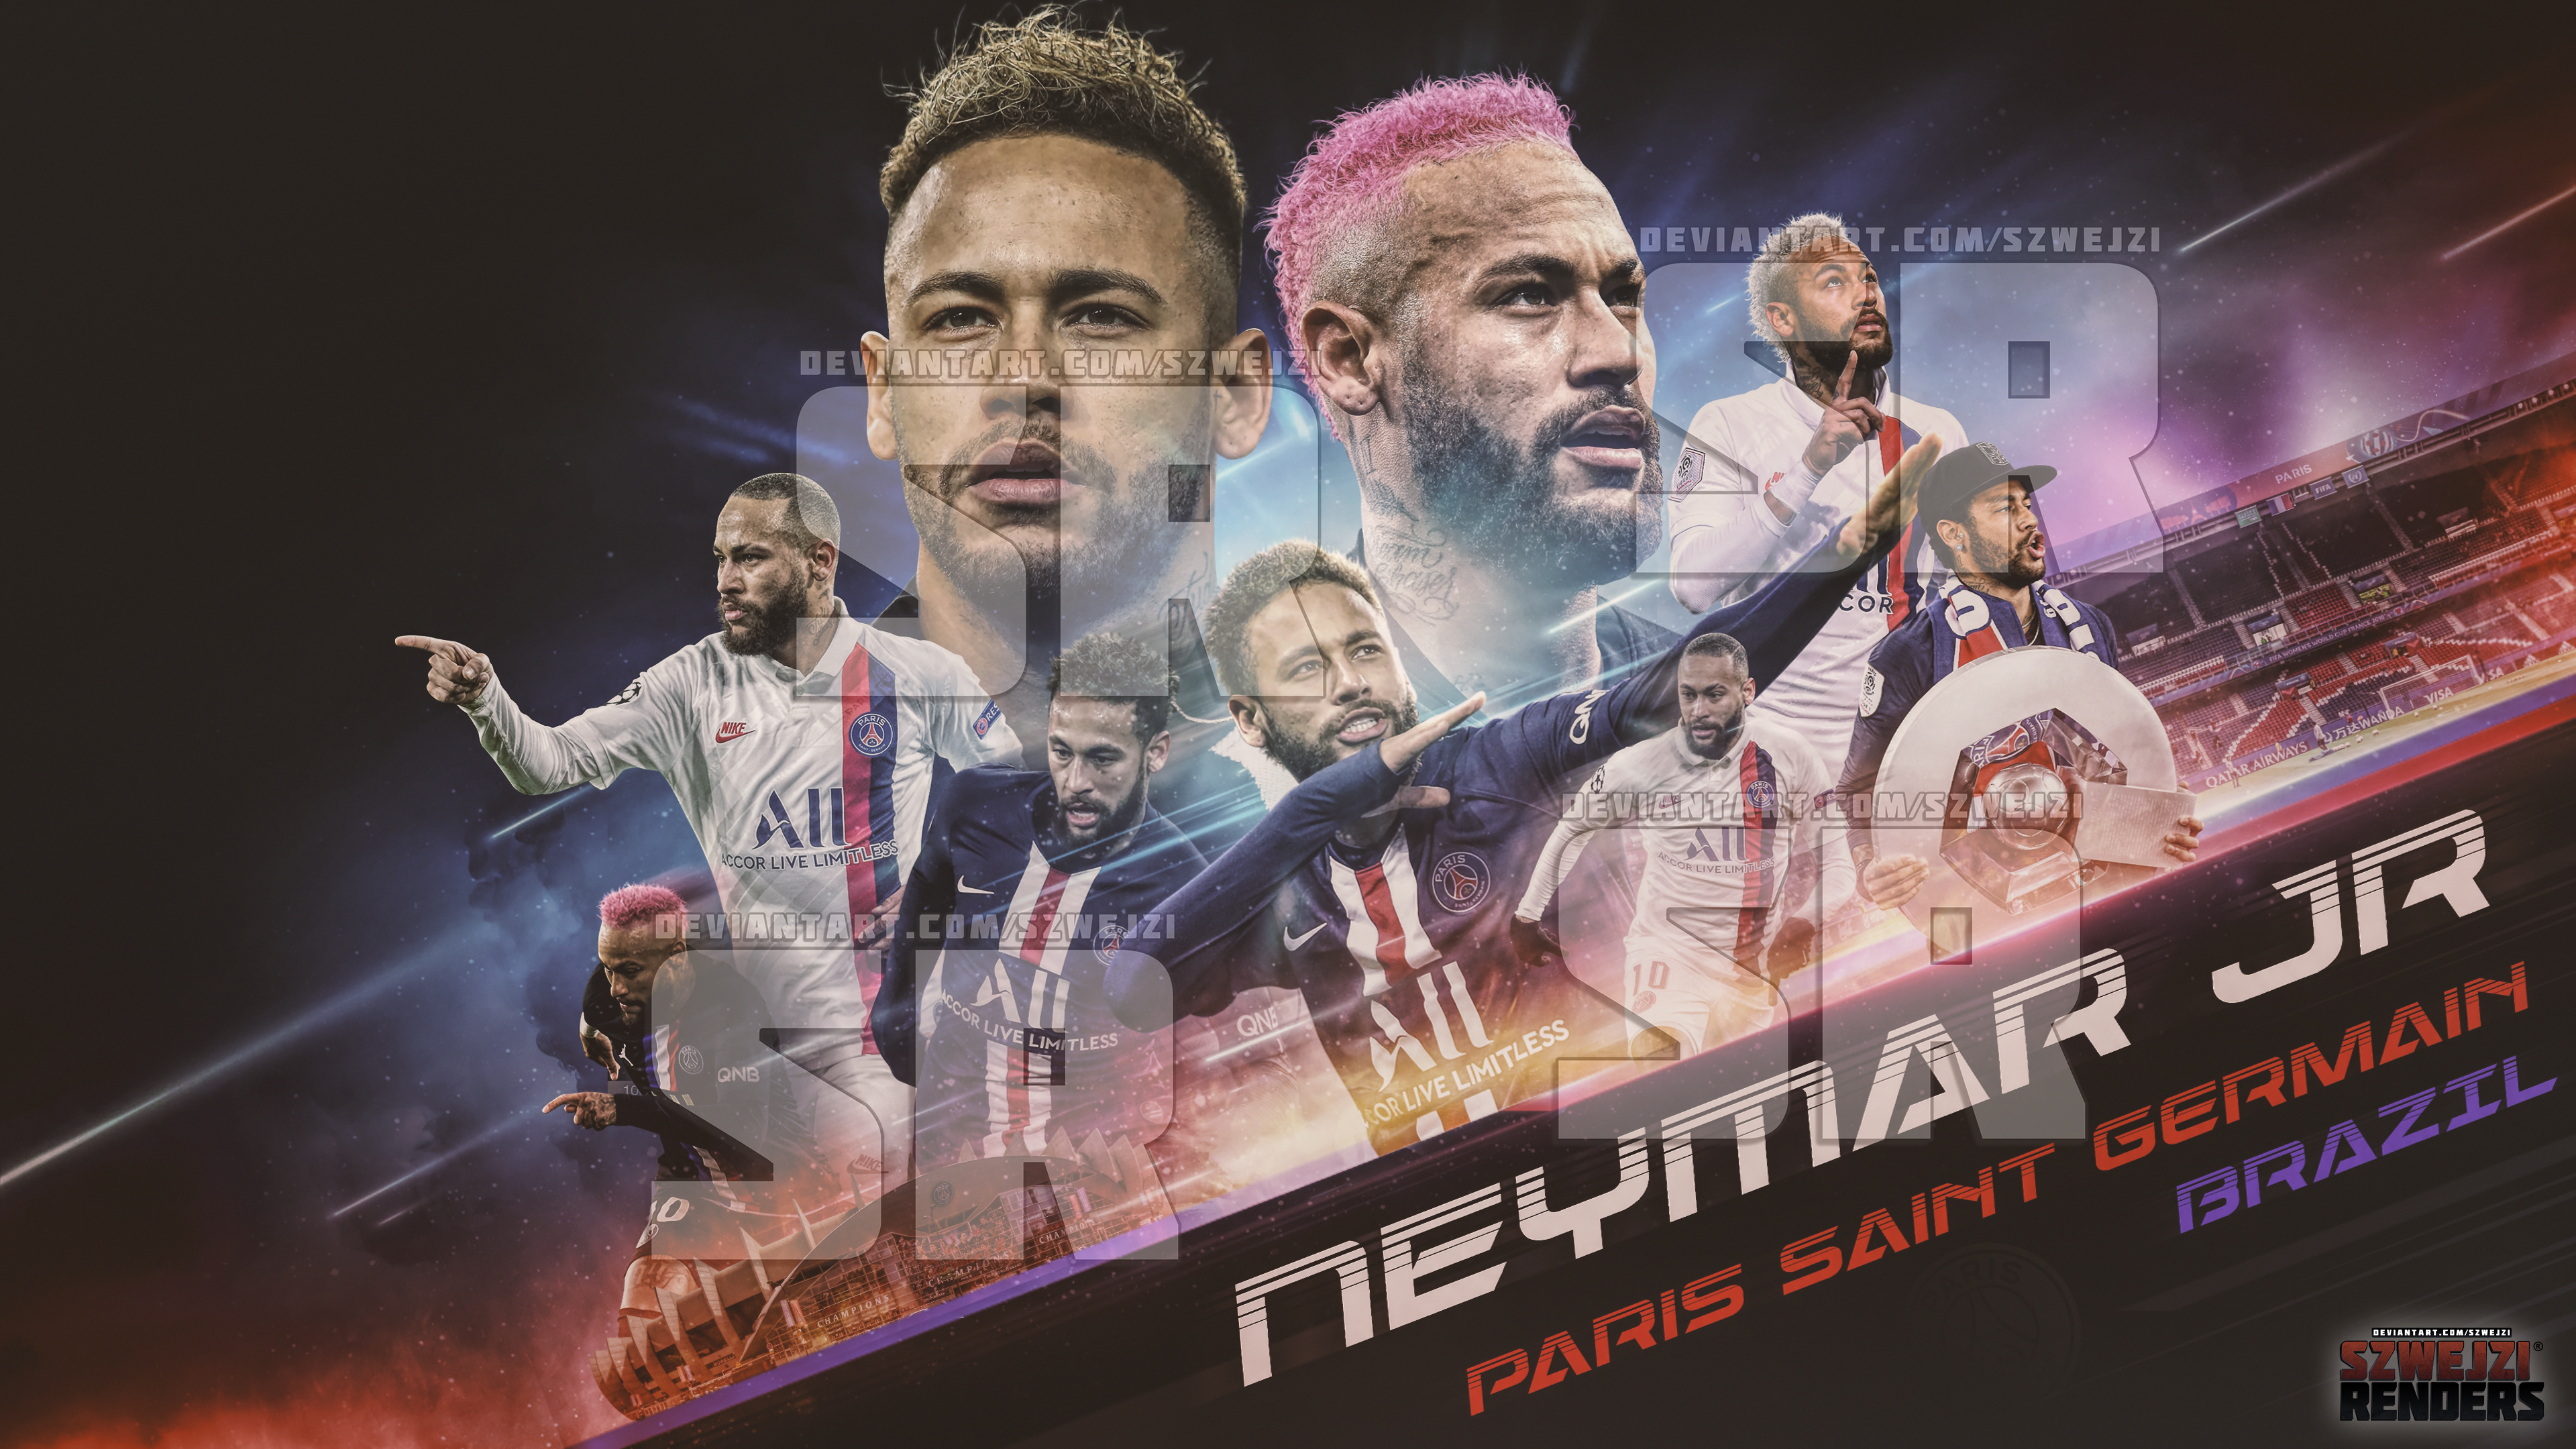 Chào mừng bạn đến với hình nền Neymar ở đội Paris Saint Germain! Hình ảnh này sẽ mang đến cho bạn một cảm giác phấn khích vì Neymar sẽ là niềm hy vọng cho PSG trong mùa giải này. Khám phá thêm về cầu thủ này với hình nền của chúng tôi!